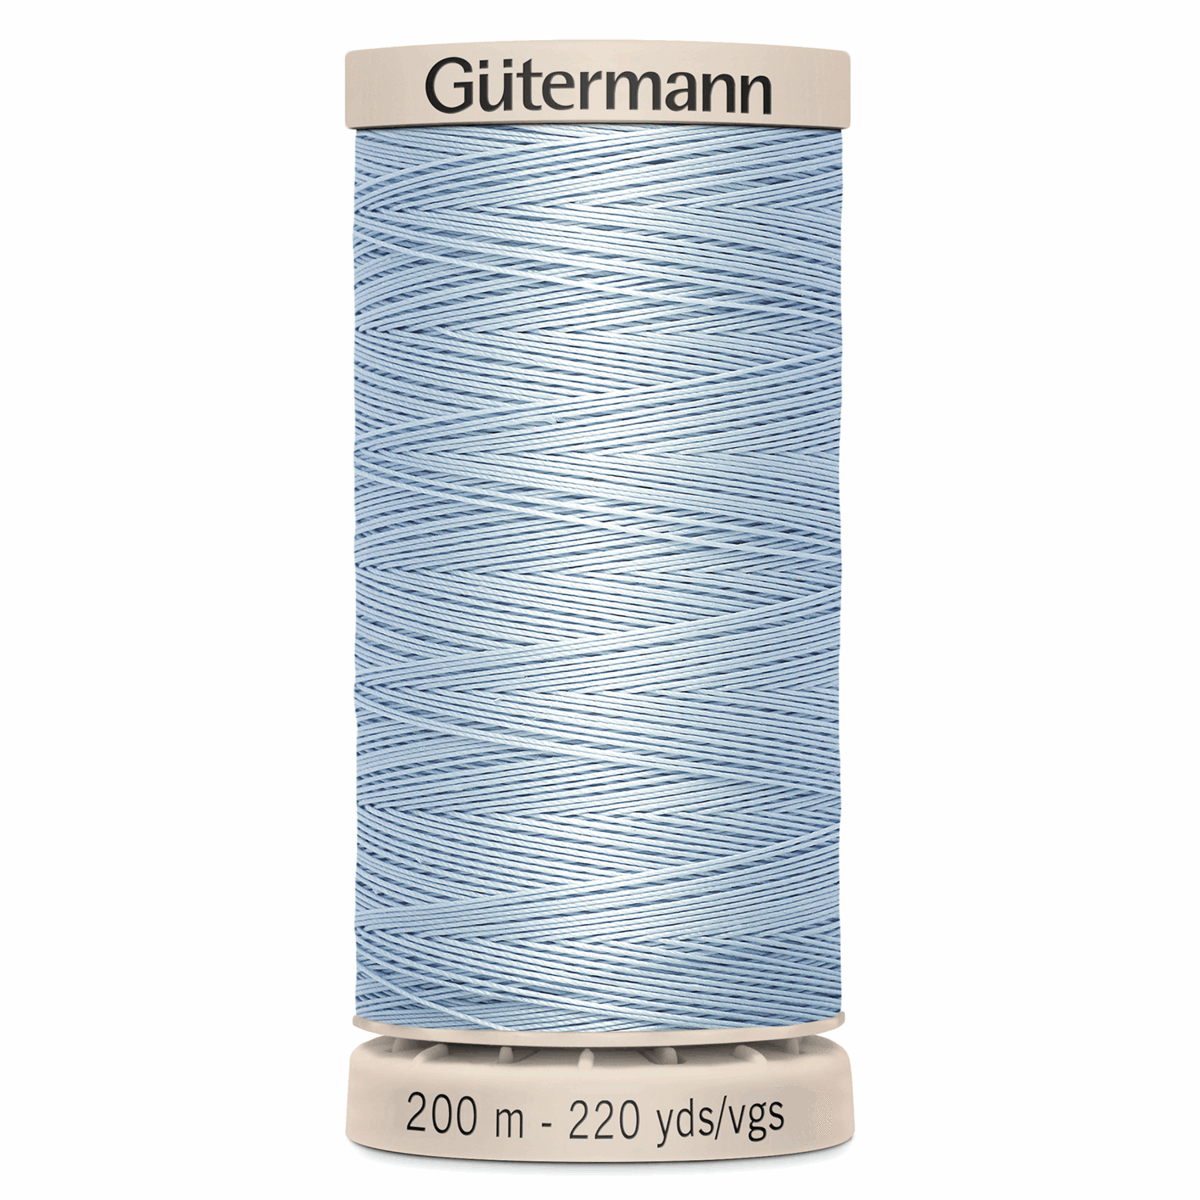 Gutermann Quilting Thread 200m - Colour 6217